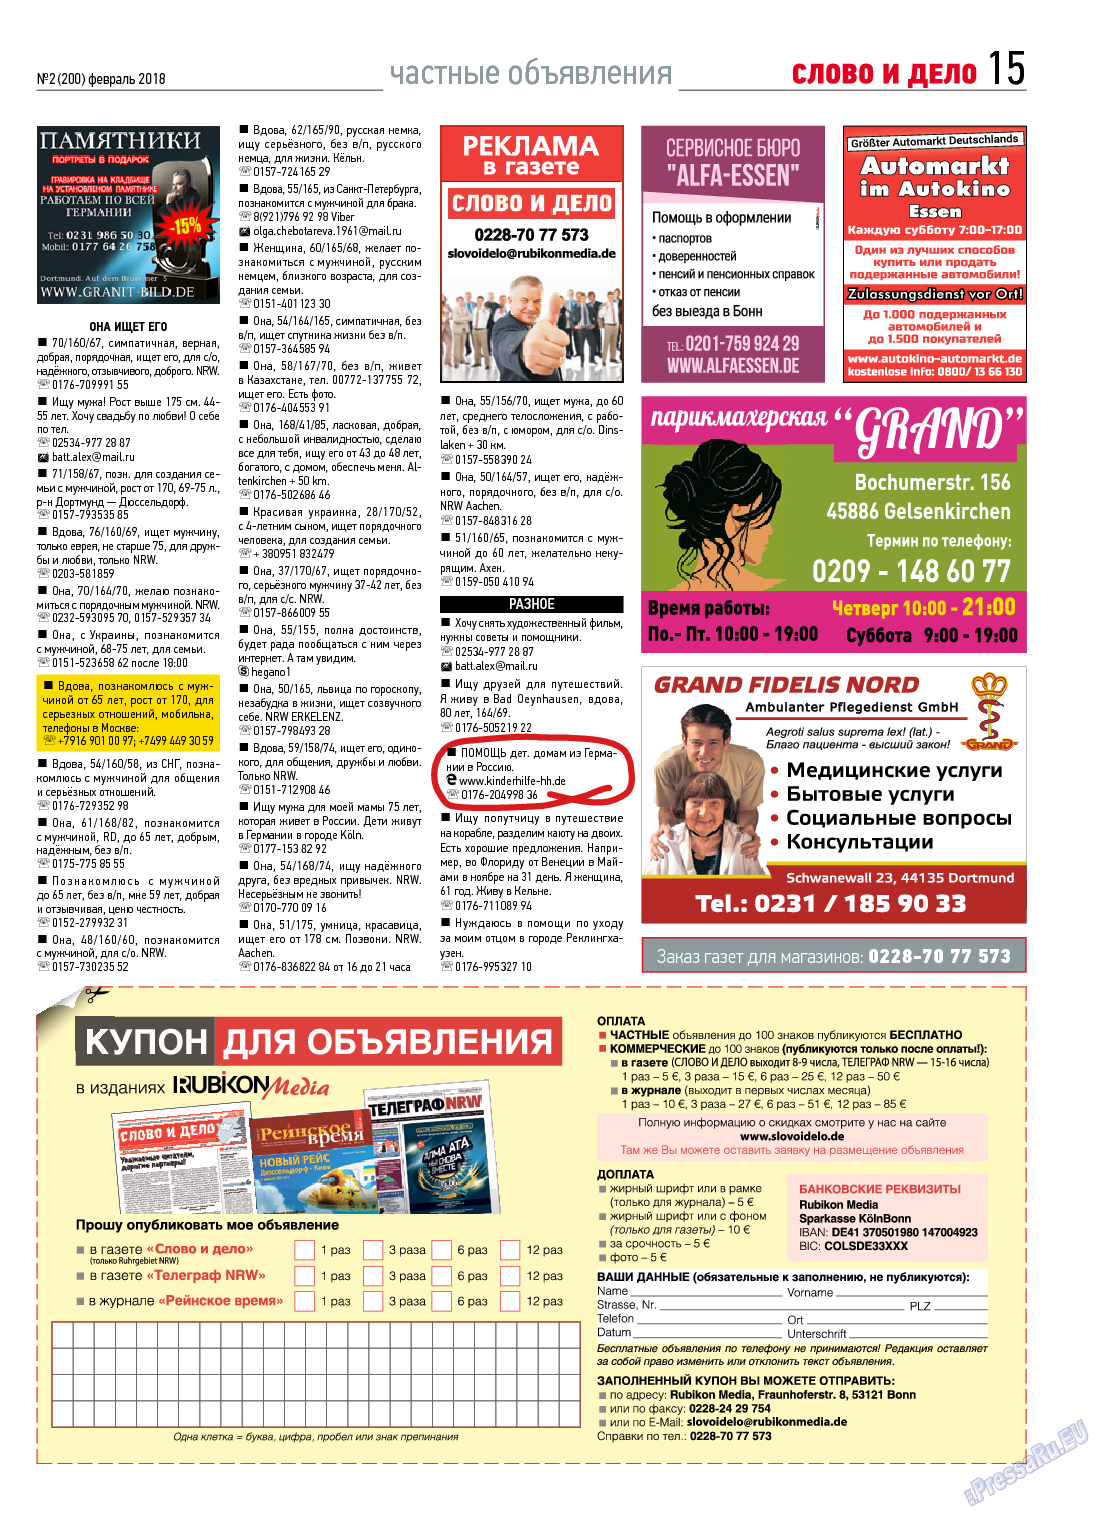 Слово и дело, газета. 2018 №2 стр.15